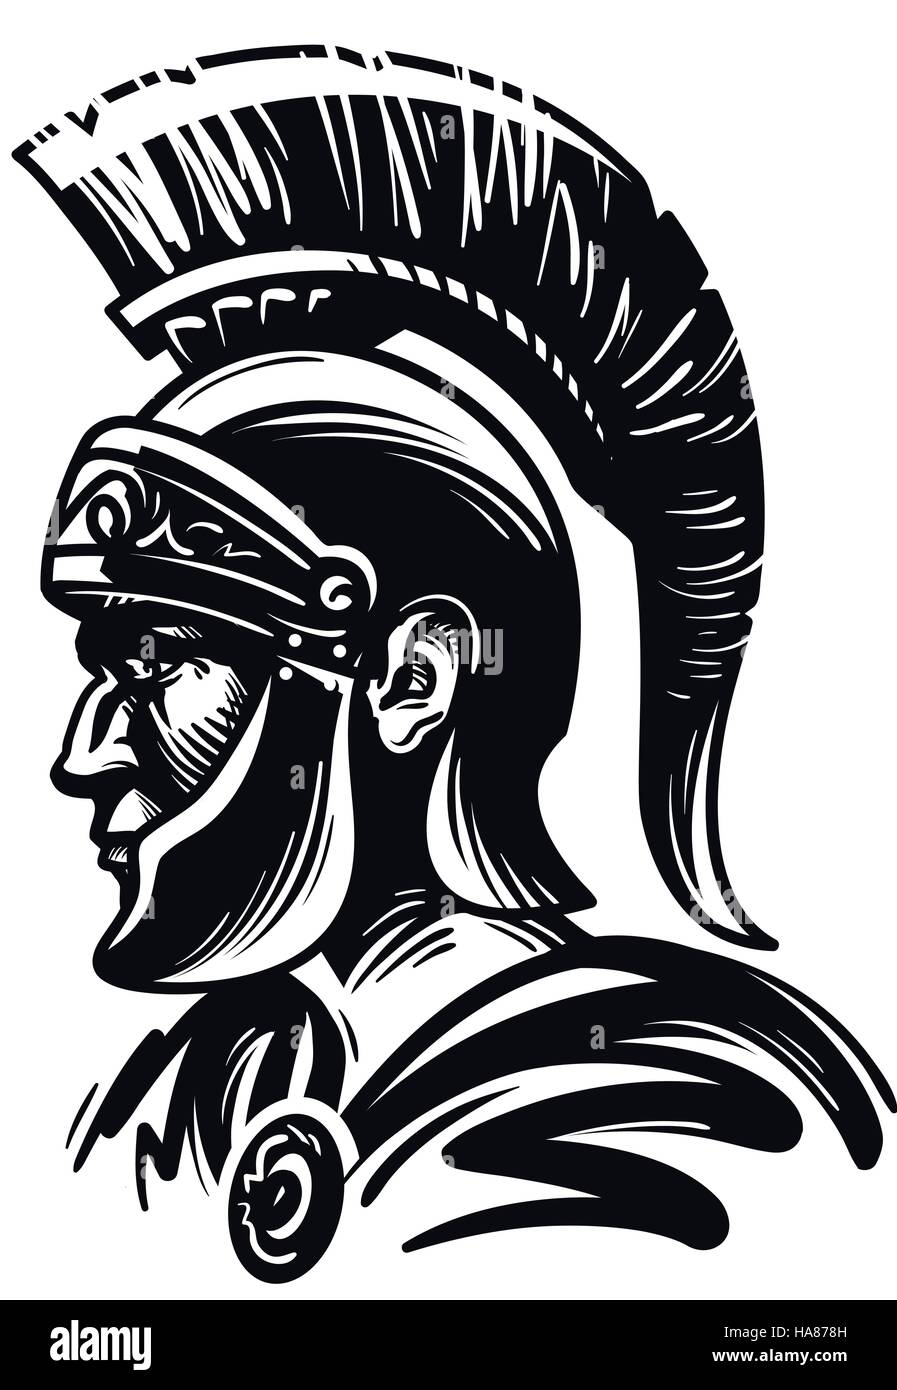 The Spartan Warrior Versus the Viking Warrior - HubPages